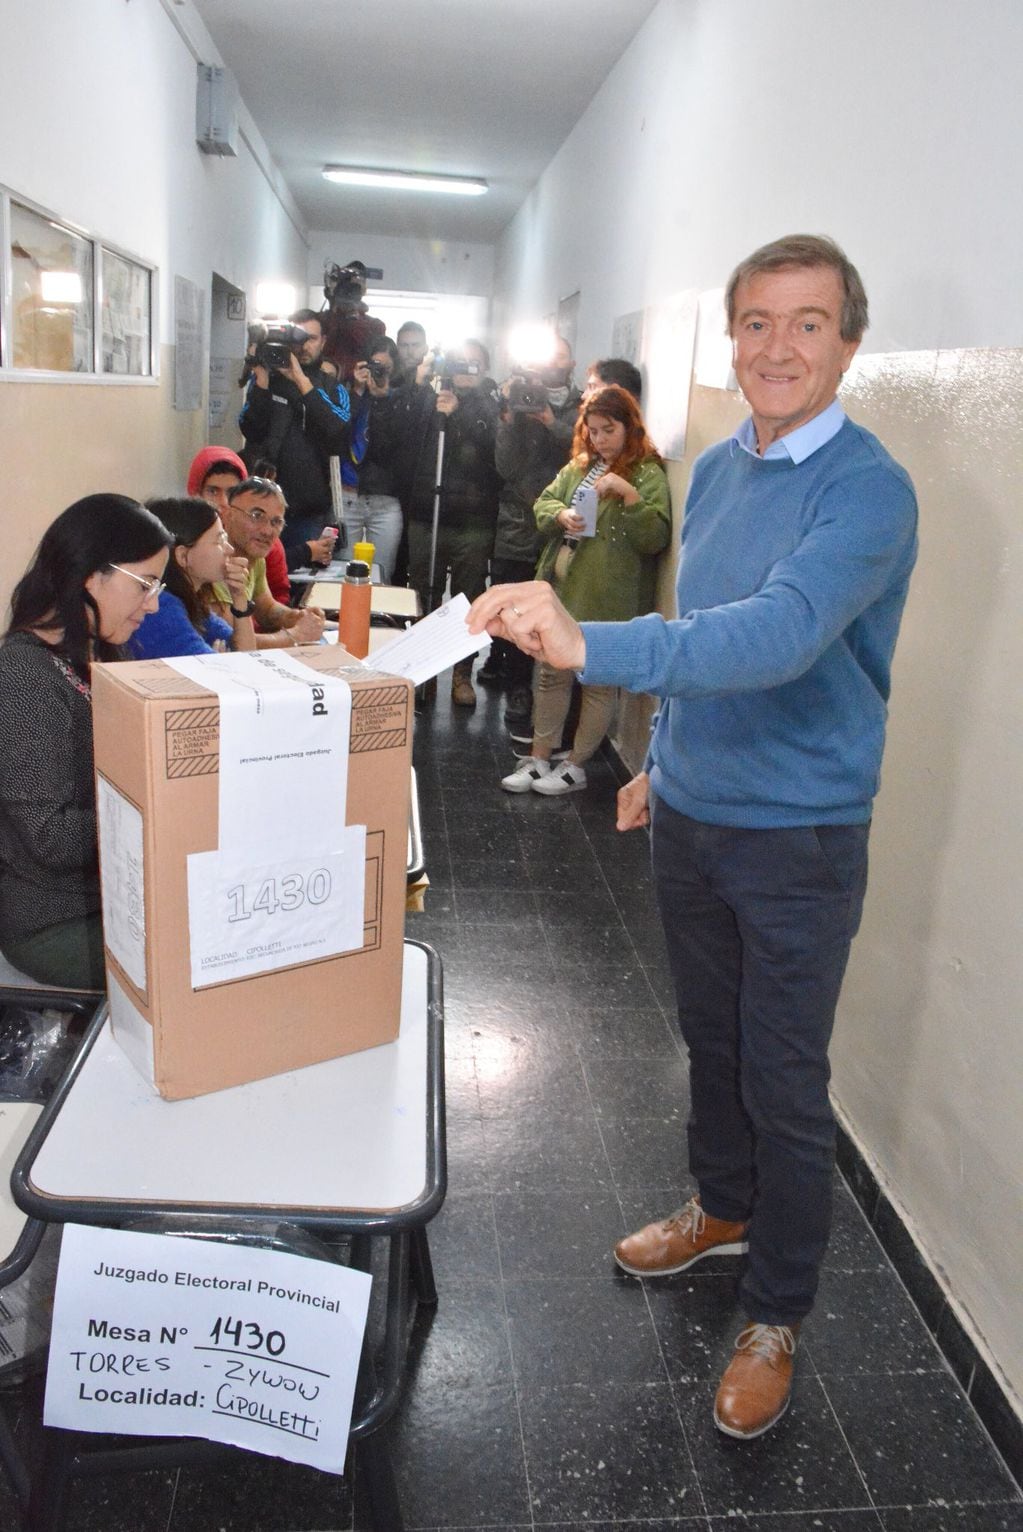 Aníbal Tortoriello emitiendo su voto en las elecciones provinciales de Río Negro.